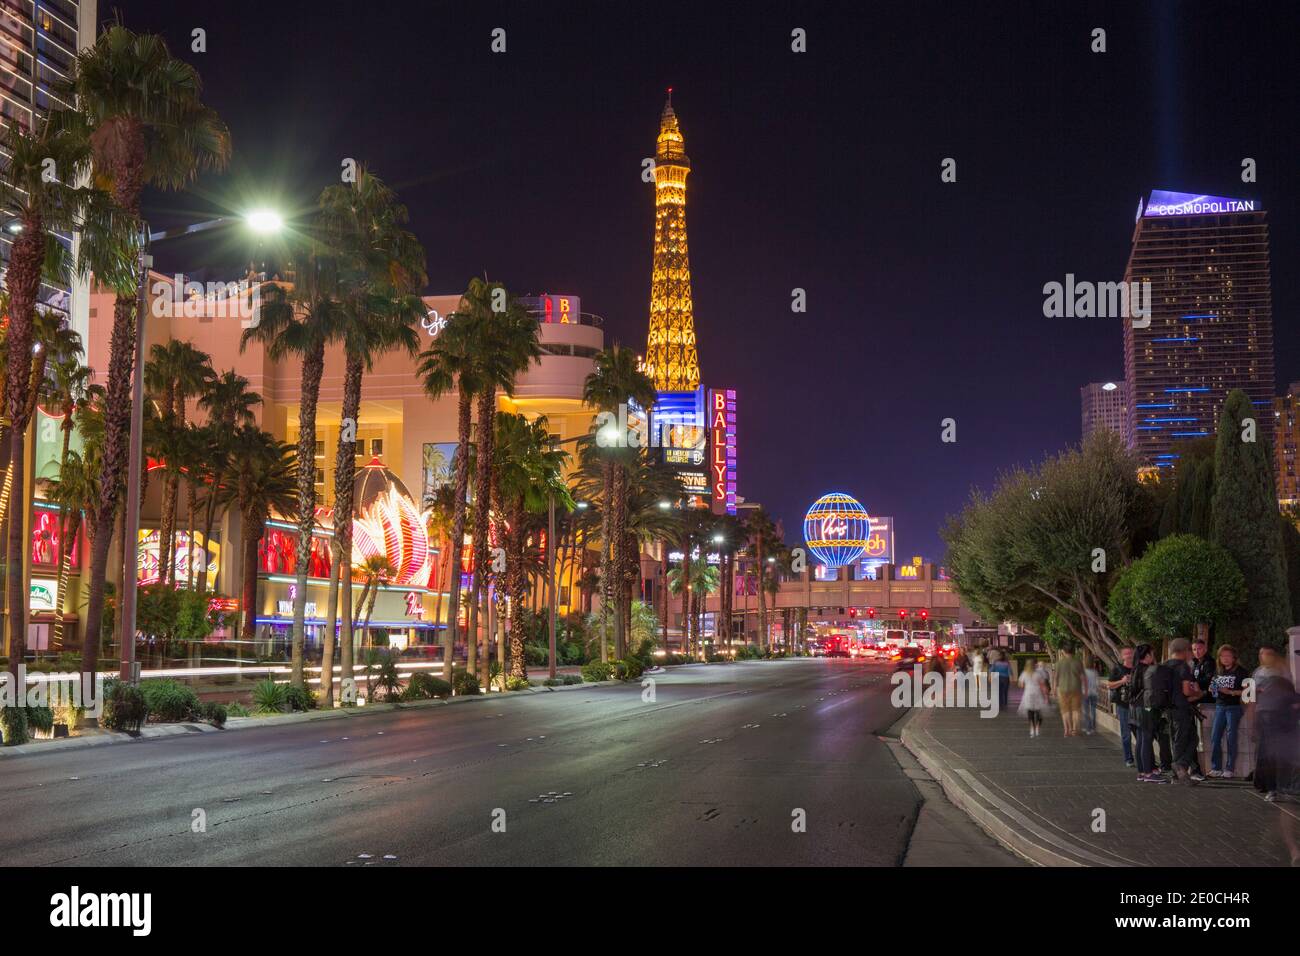 Vue le long du Strip la nuit, Tour Eiffel illuminée au Paris Hotel and Casino proéminent, Las Vegas, Nevada, Etats-Unis d'Amérique Banque D'Images